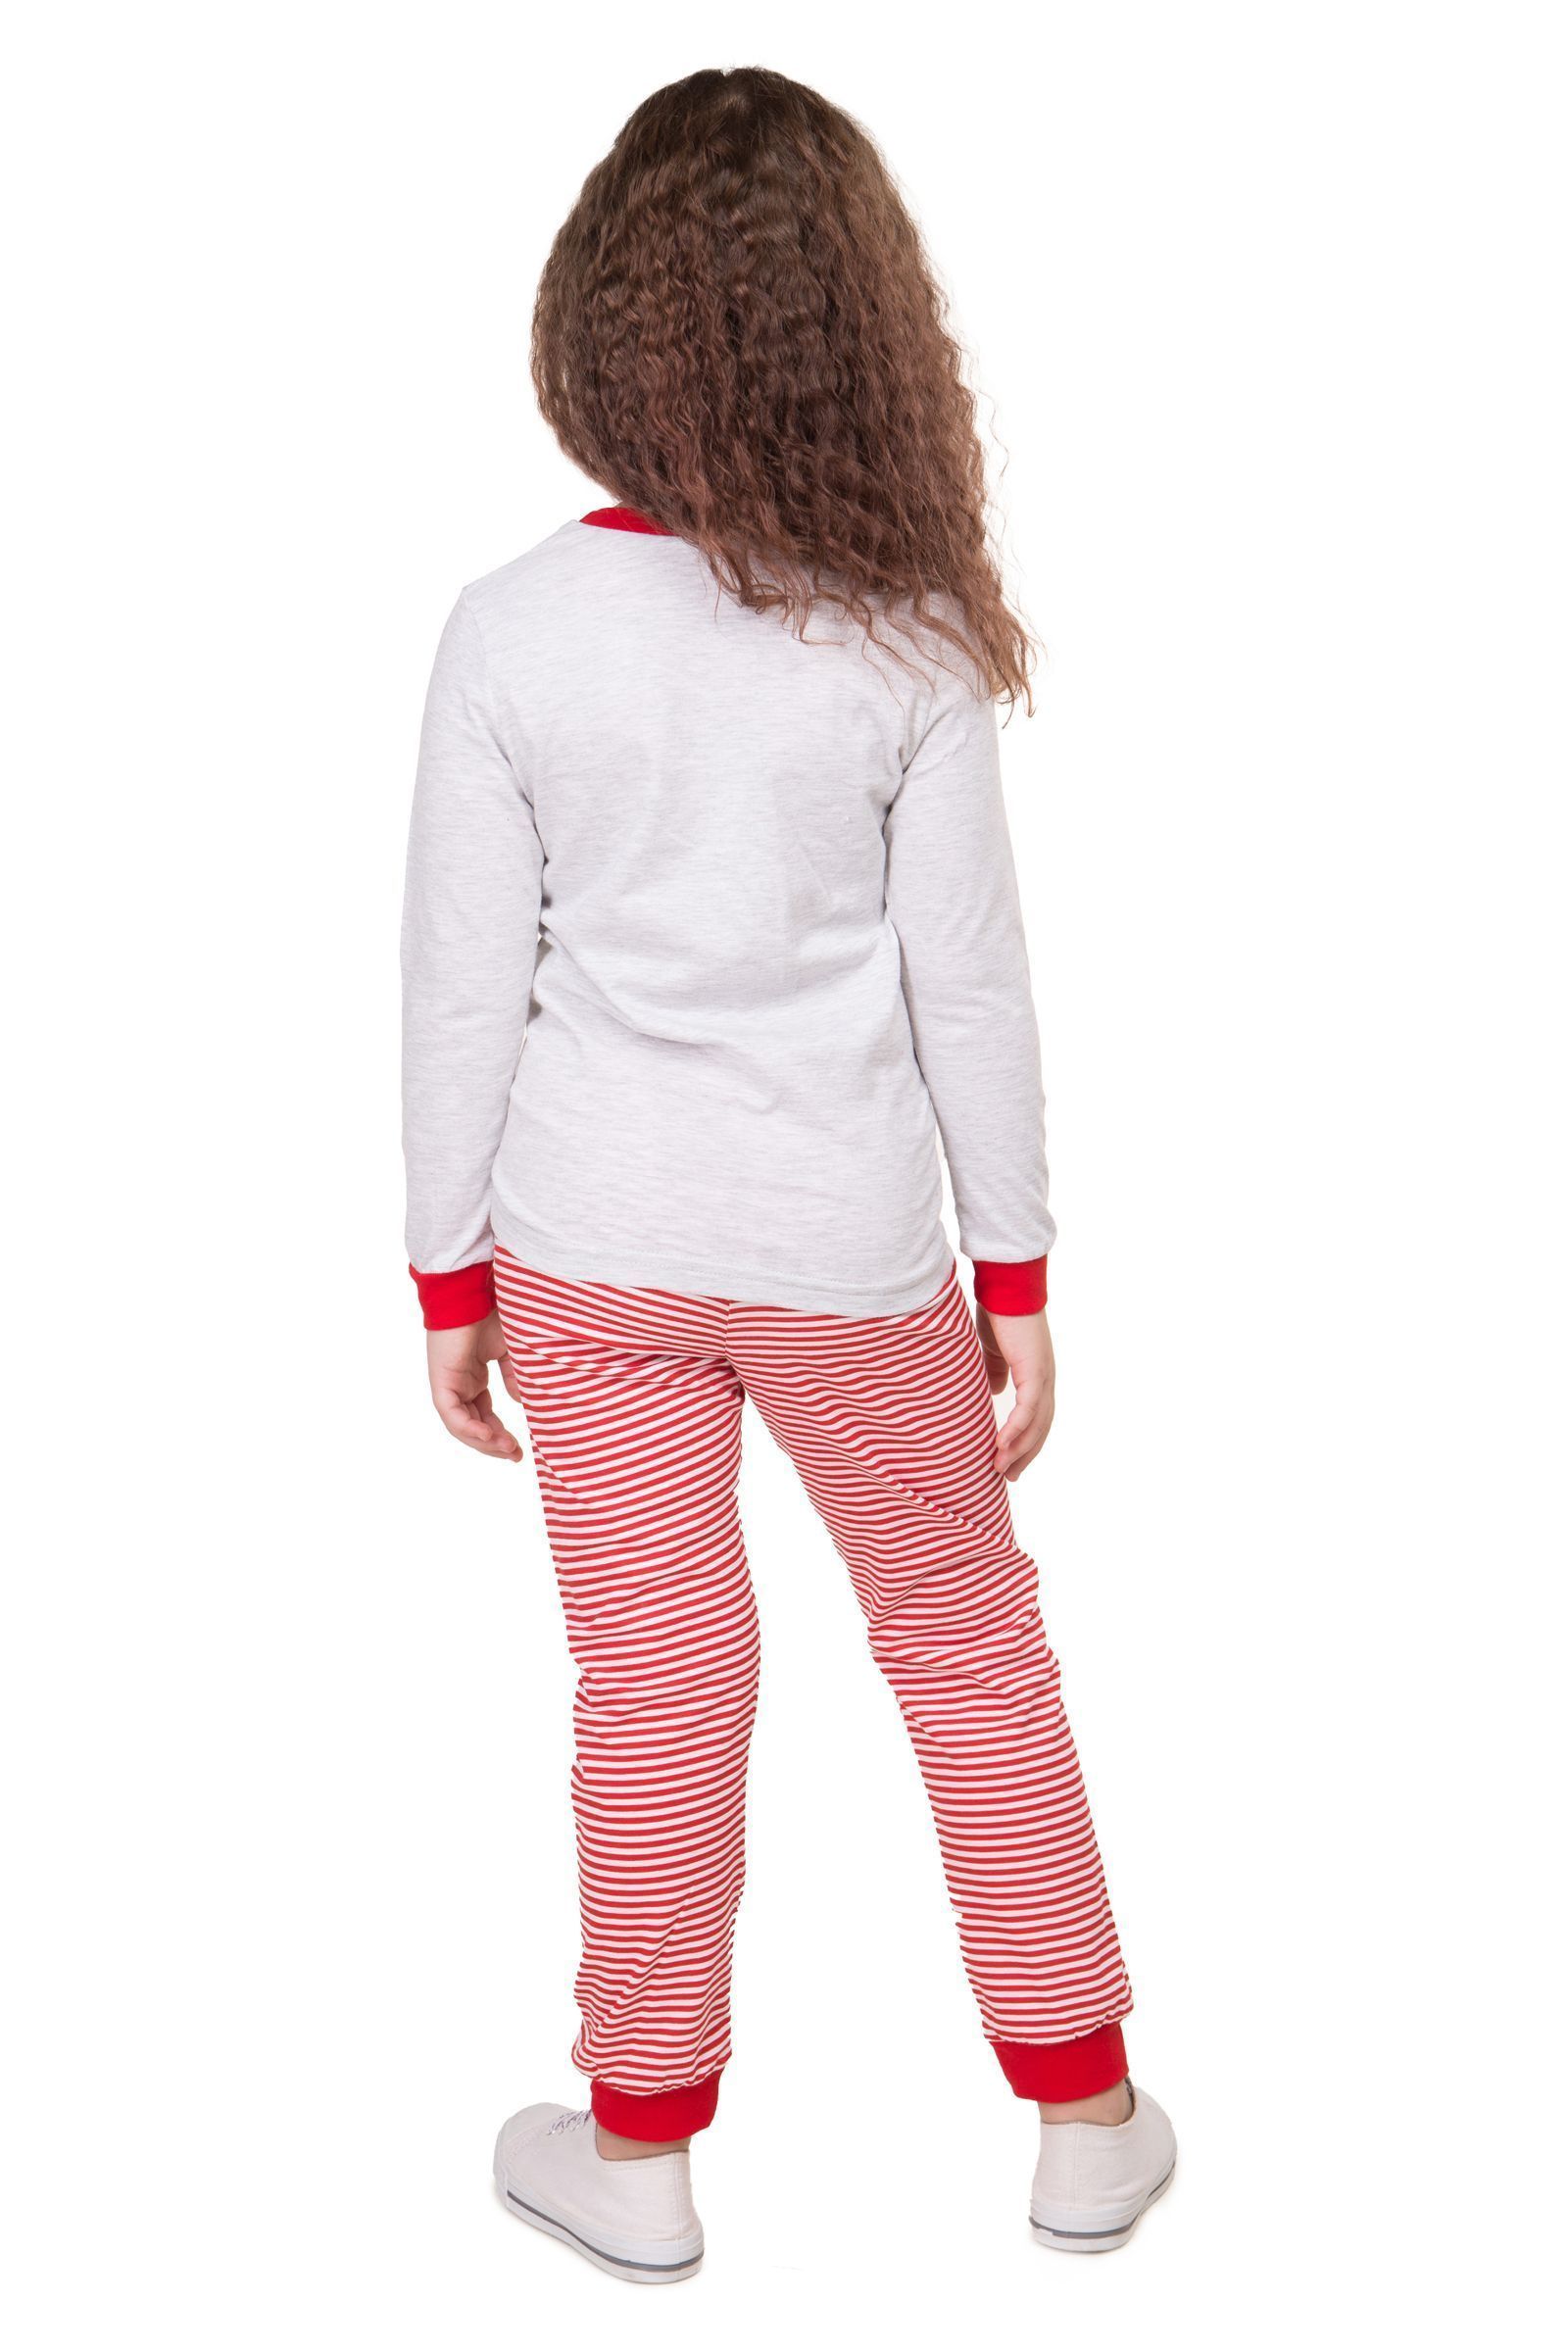 Пижама-ПЖ02-3474 оптом от производителя детской одежды 'Алёна'